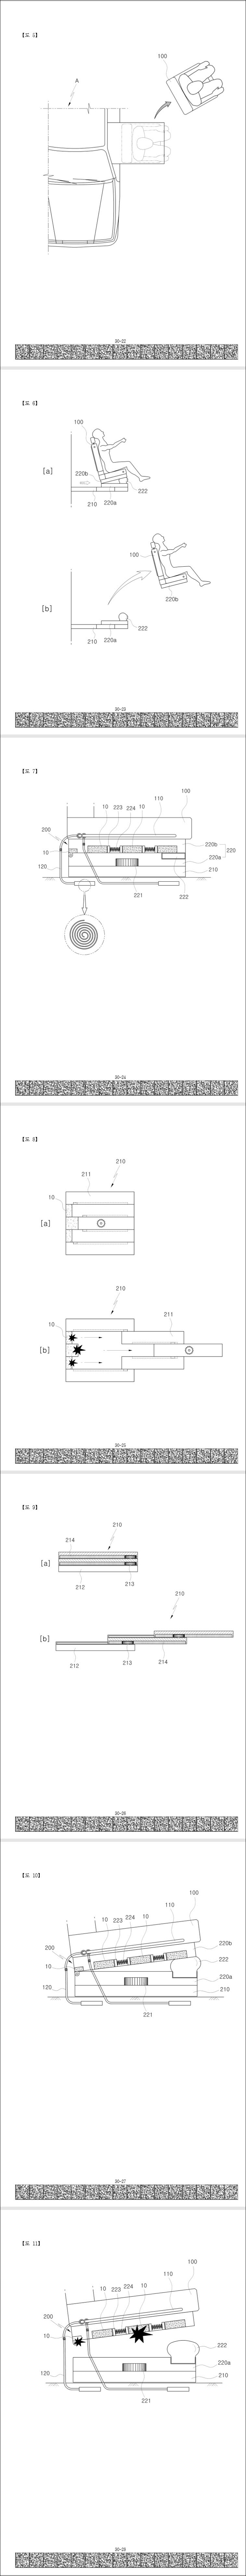 특허 제10-2104538호(자동차용 비상탈출장치, 황호찬)